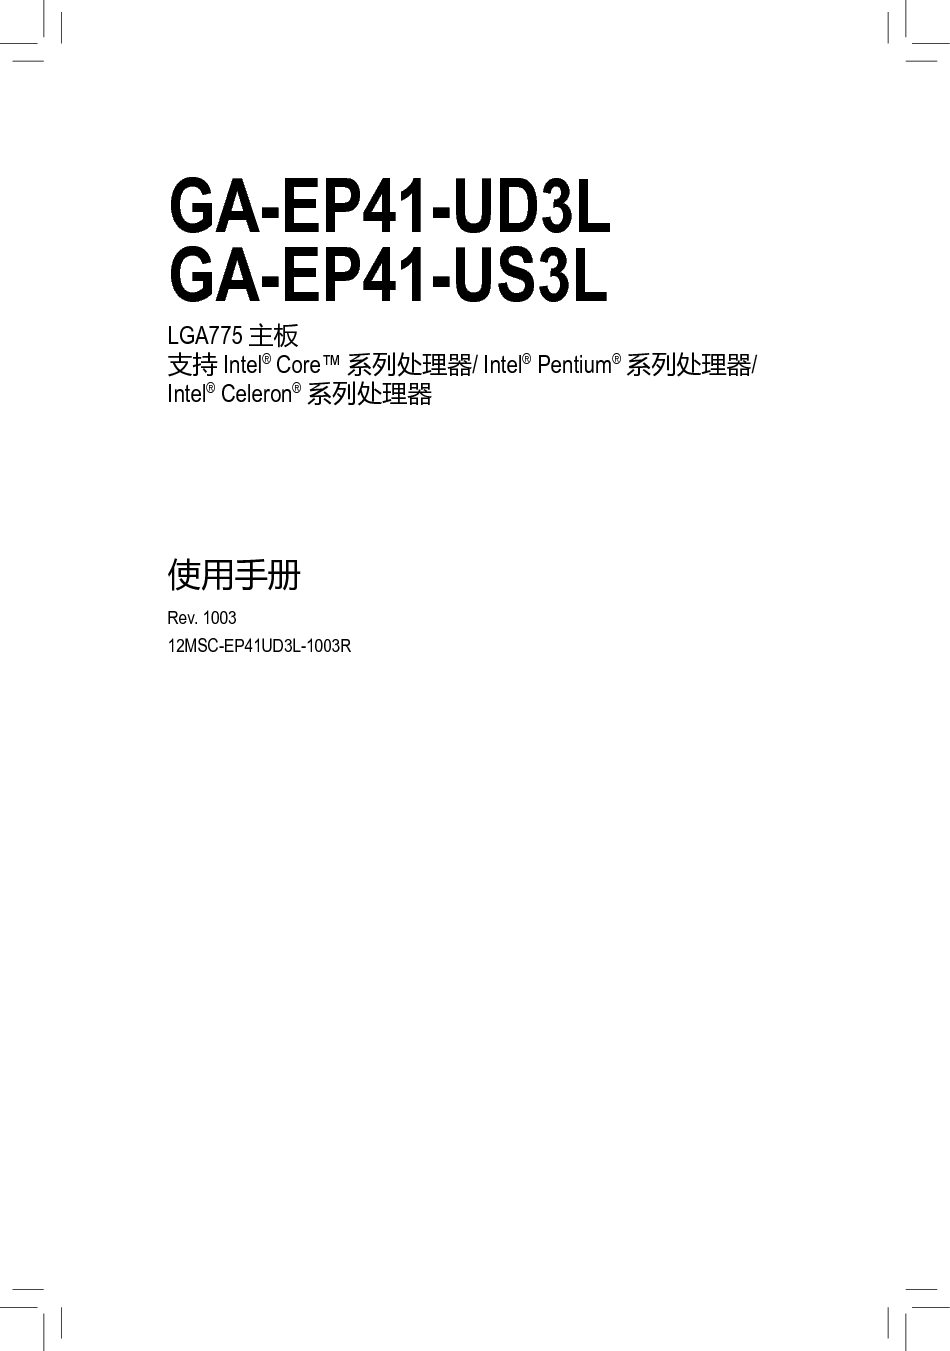 技嘉 Gigabyte GA-EP41-UD3L 使用手册 封面